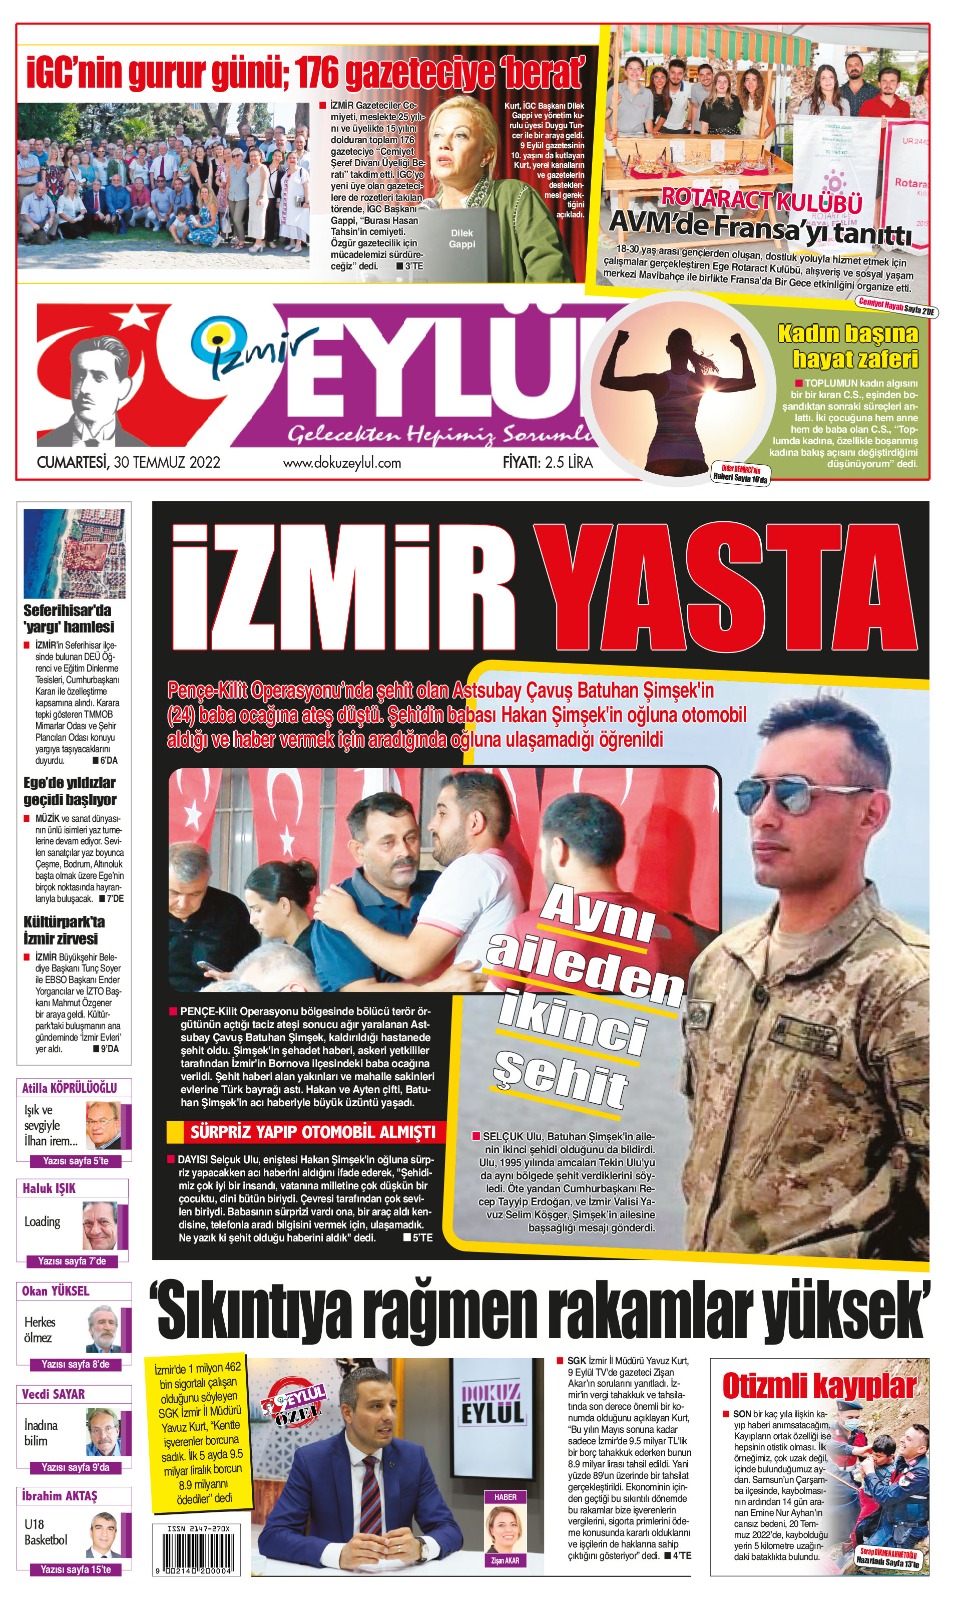 Dokuz Eylül Gazetesi | İzmir, Türkiye, Dünya'dan Güncel Haberler - 30.07.2022 Manşeti